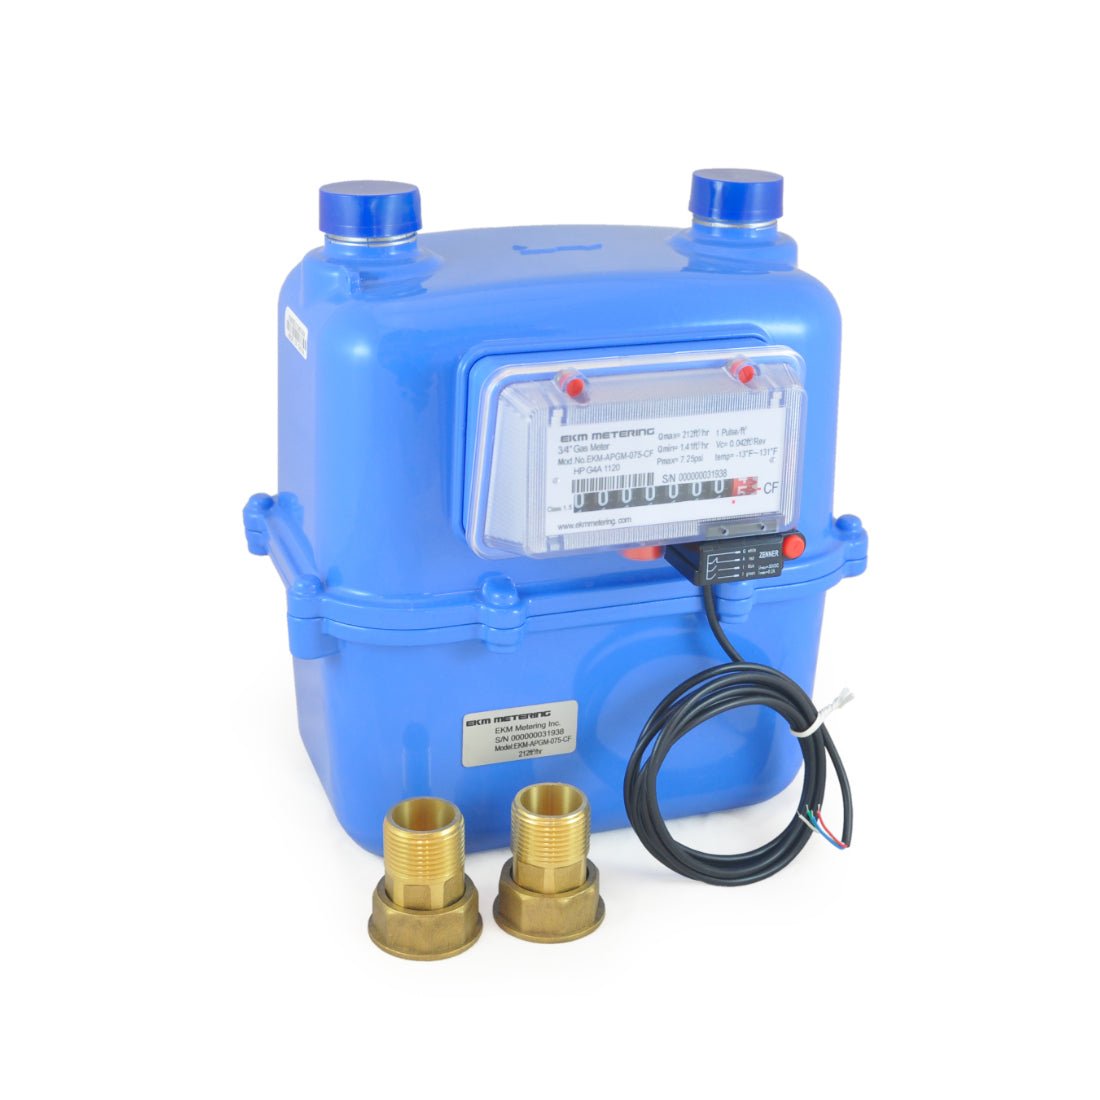 3/4 Inch Pulse Output Gas Meter - Aluminum, Cold Temperature - APGM-075-CF - EKM Metering Inc.